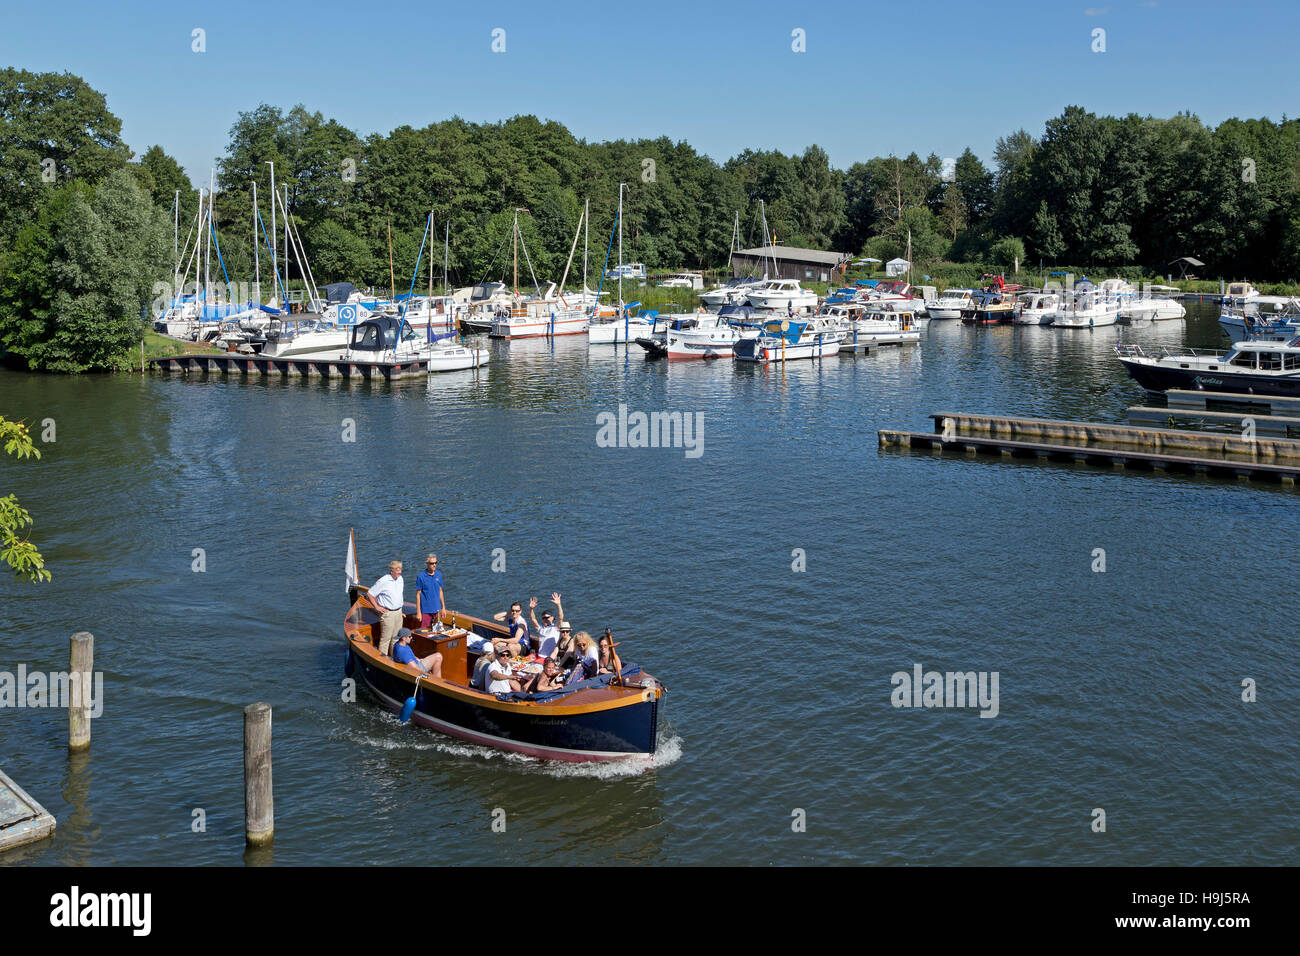 Marina, rivière Elde, Plau am See, lacs de Mecklembourg, Schleswig-Holstein, Allemagne Banque D'Images